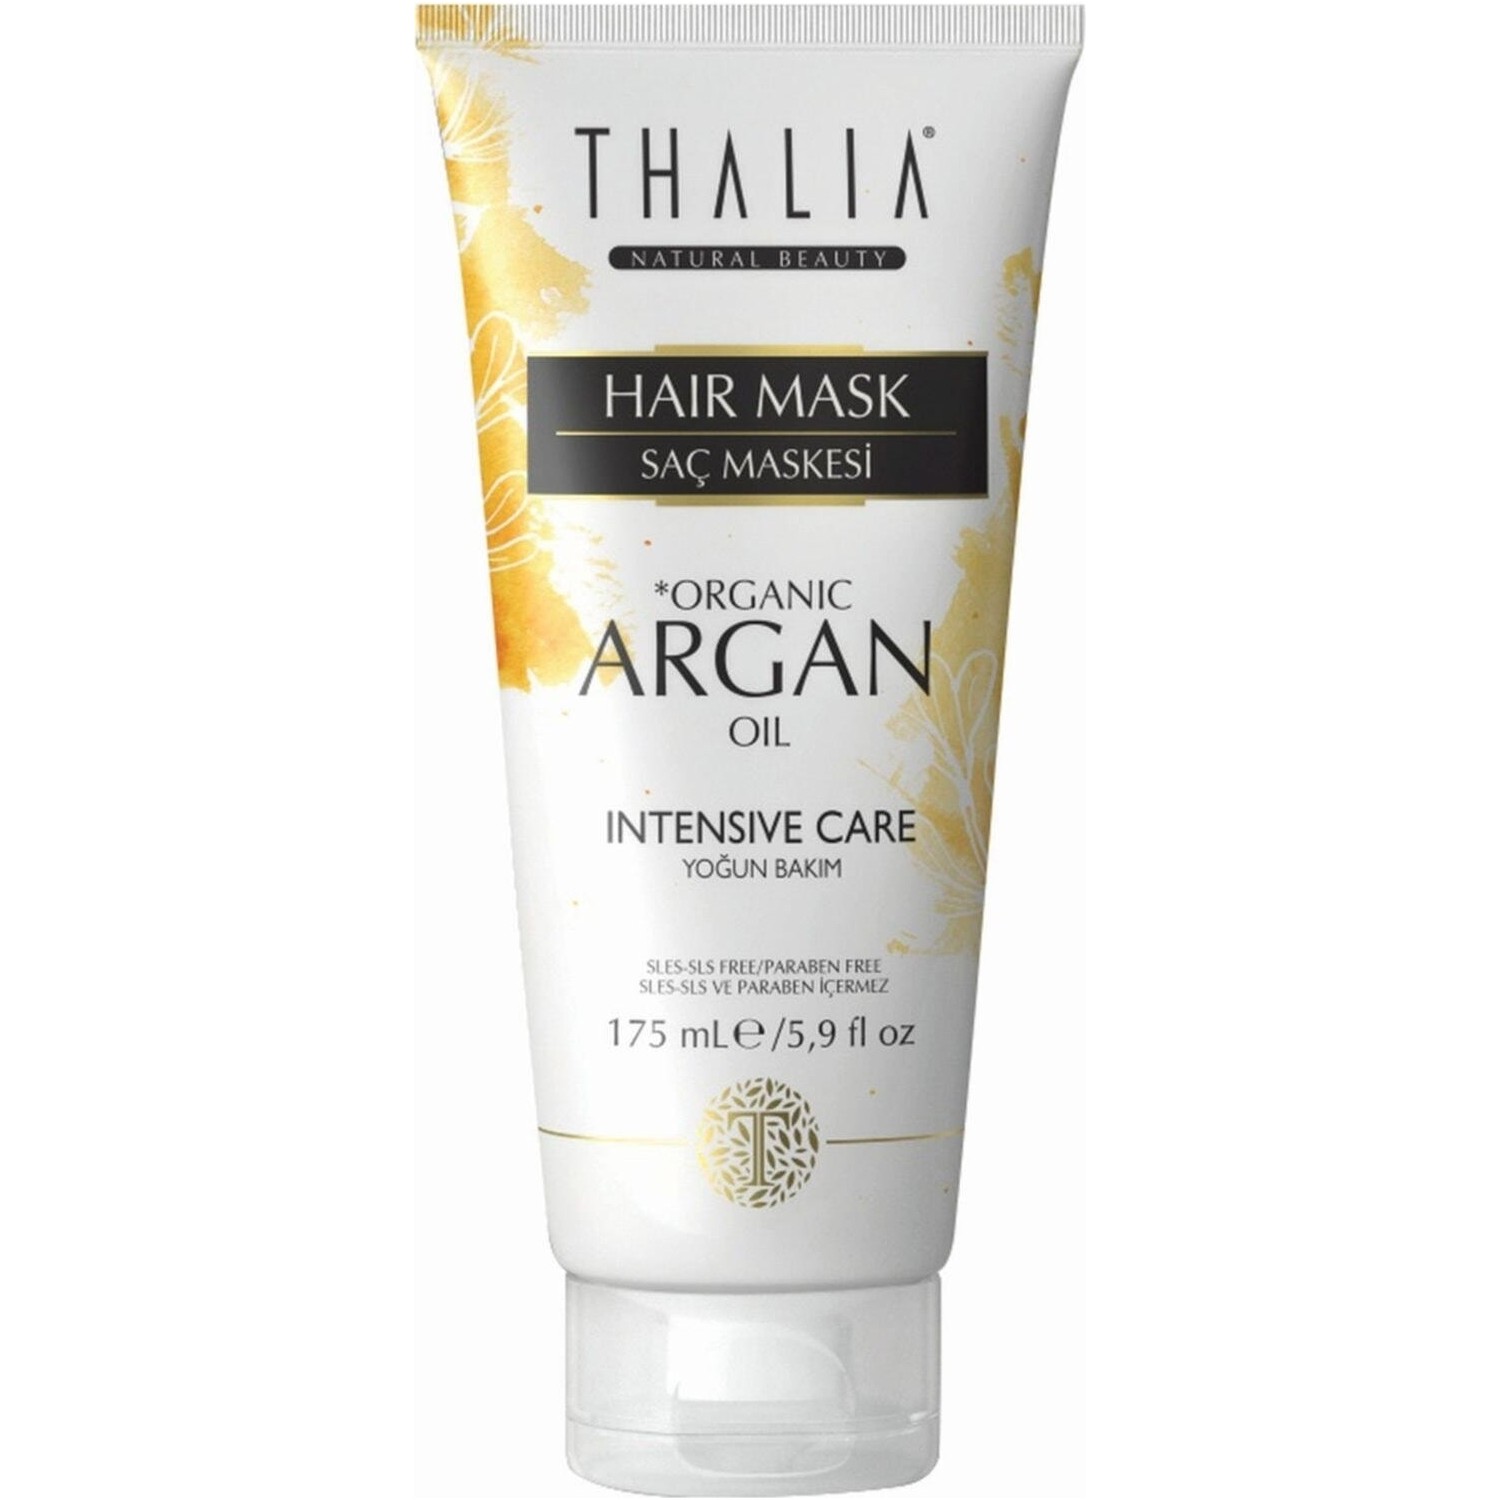 Увлажняющая маска Thalia Organic Argan Oil для волос, 175 мл крем краска для волос с аргановым маслом 3 7 темно коричневыйкоричневый 100 мл